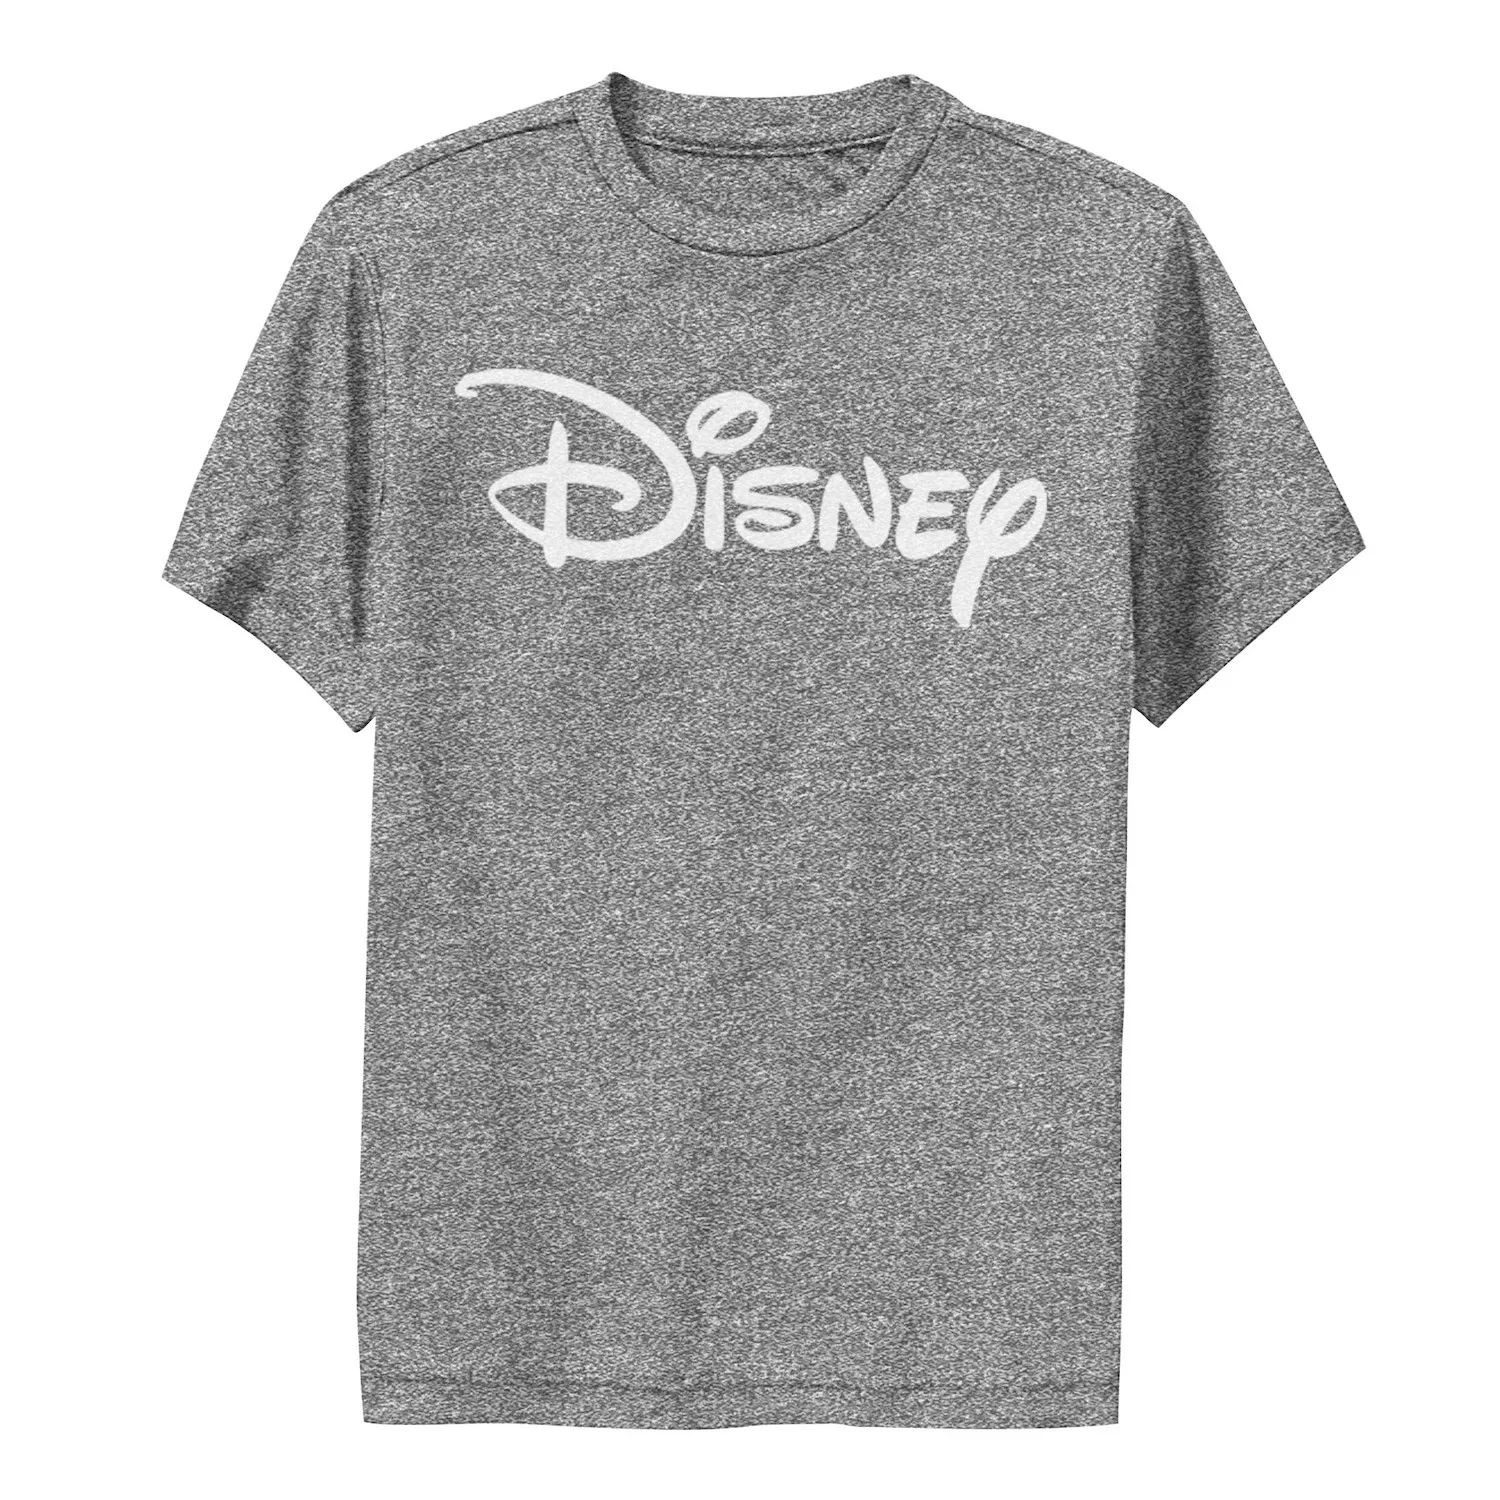 Базовая футболка Disney с логотипом Disney для мальчиков 8–20 лет и графическим рисунком Disney базовая футболка disney с логотипом disney для мальчиков 8–20 лет и графическим рисунком disney